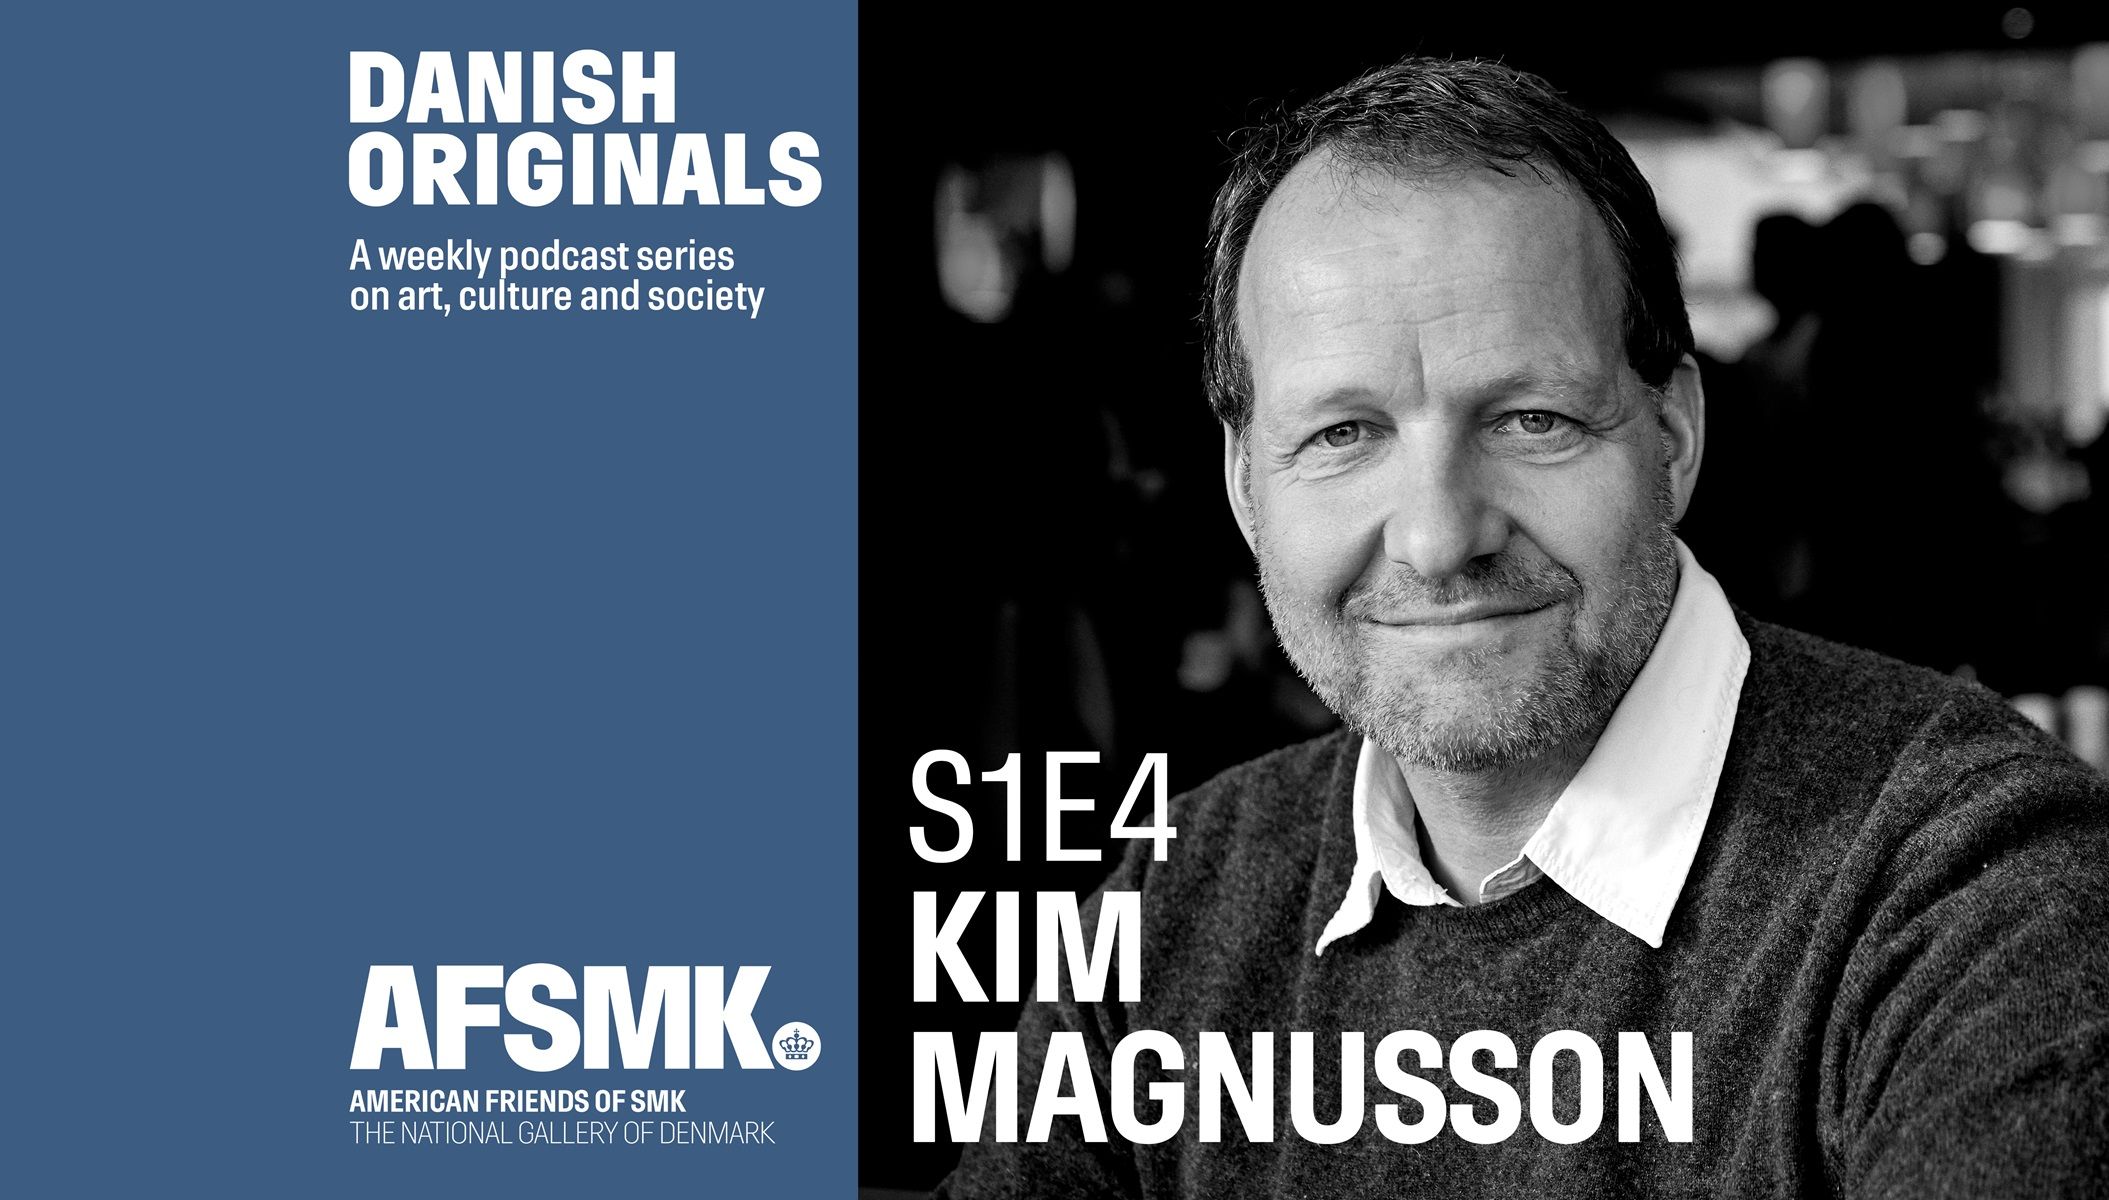 Danish Originals S1 E4: Kim Magnusson